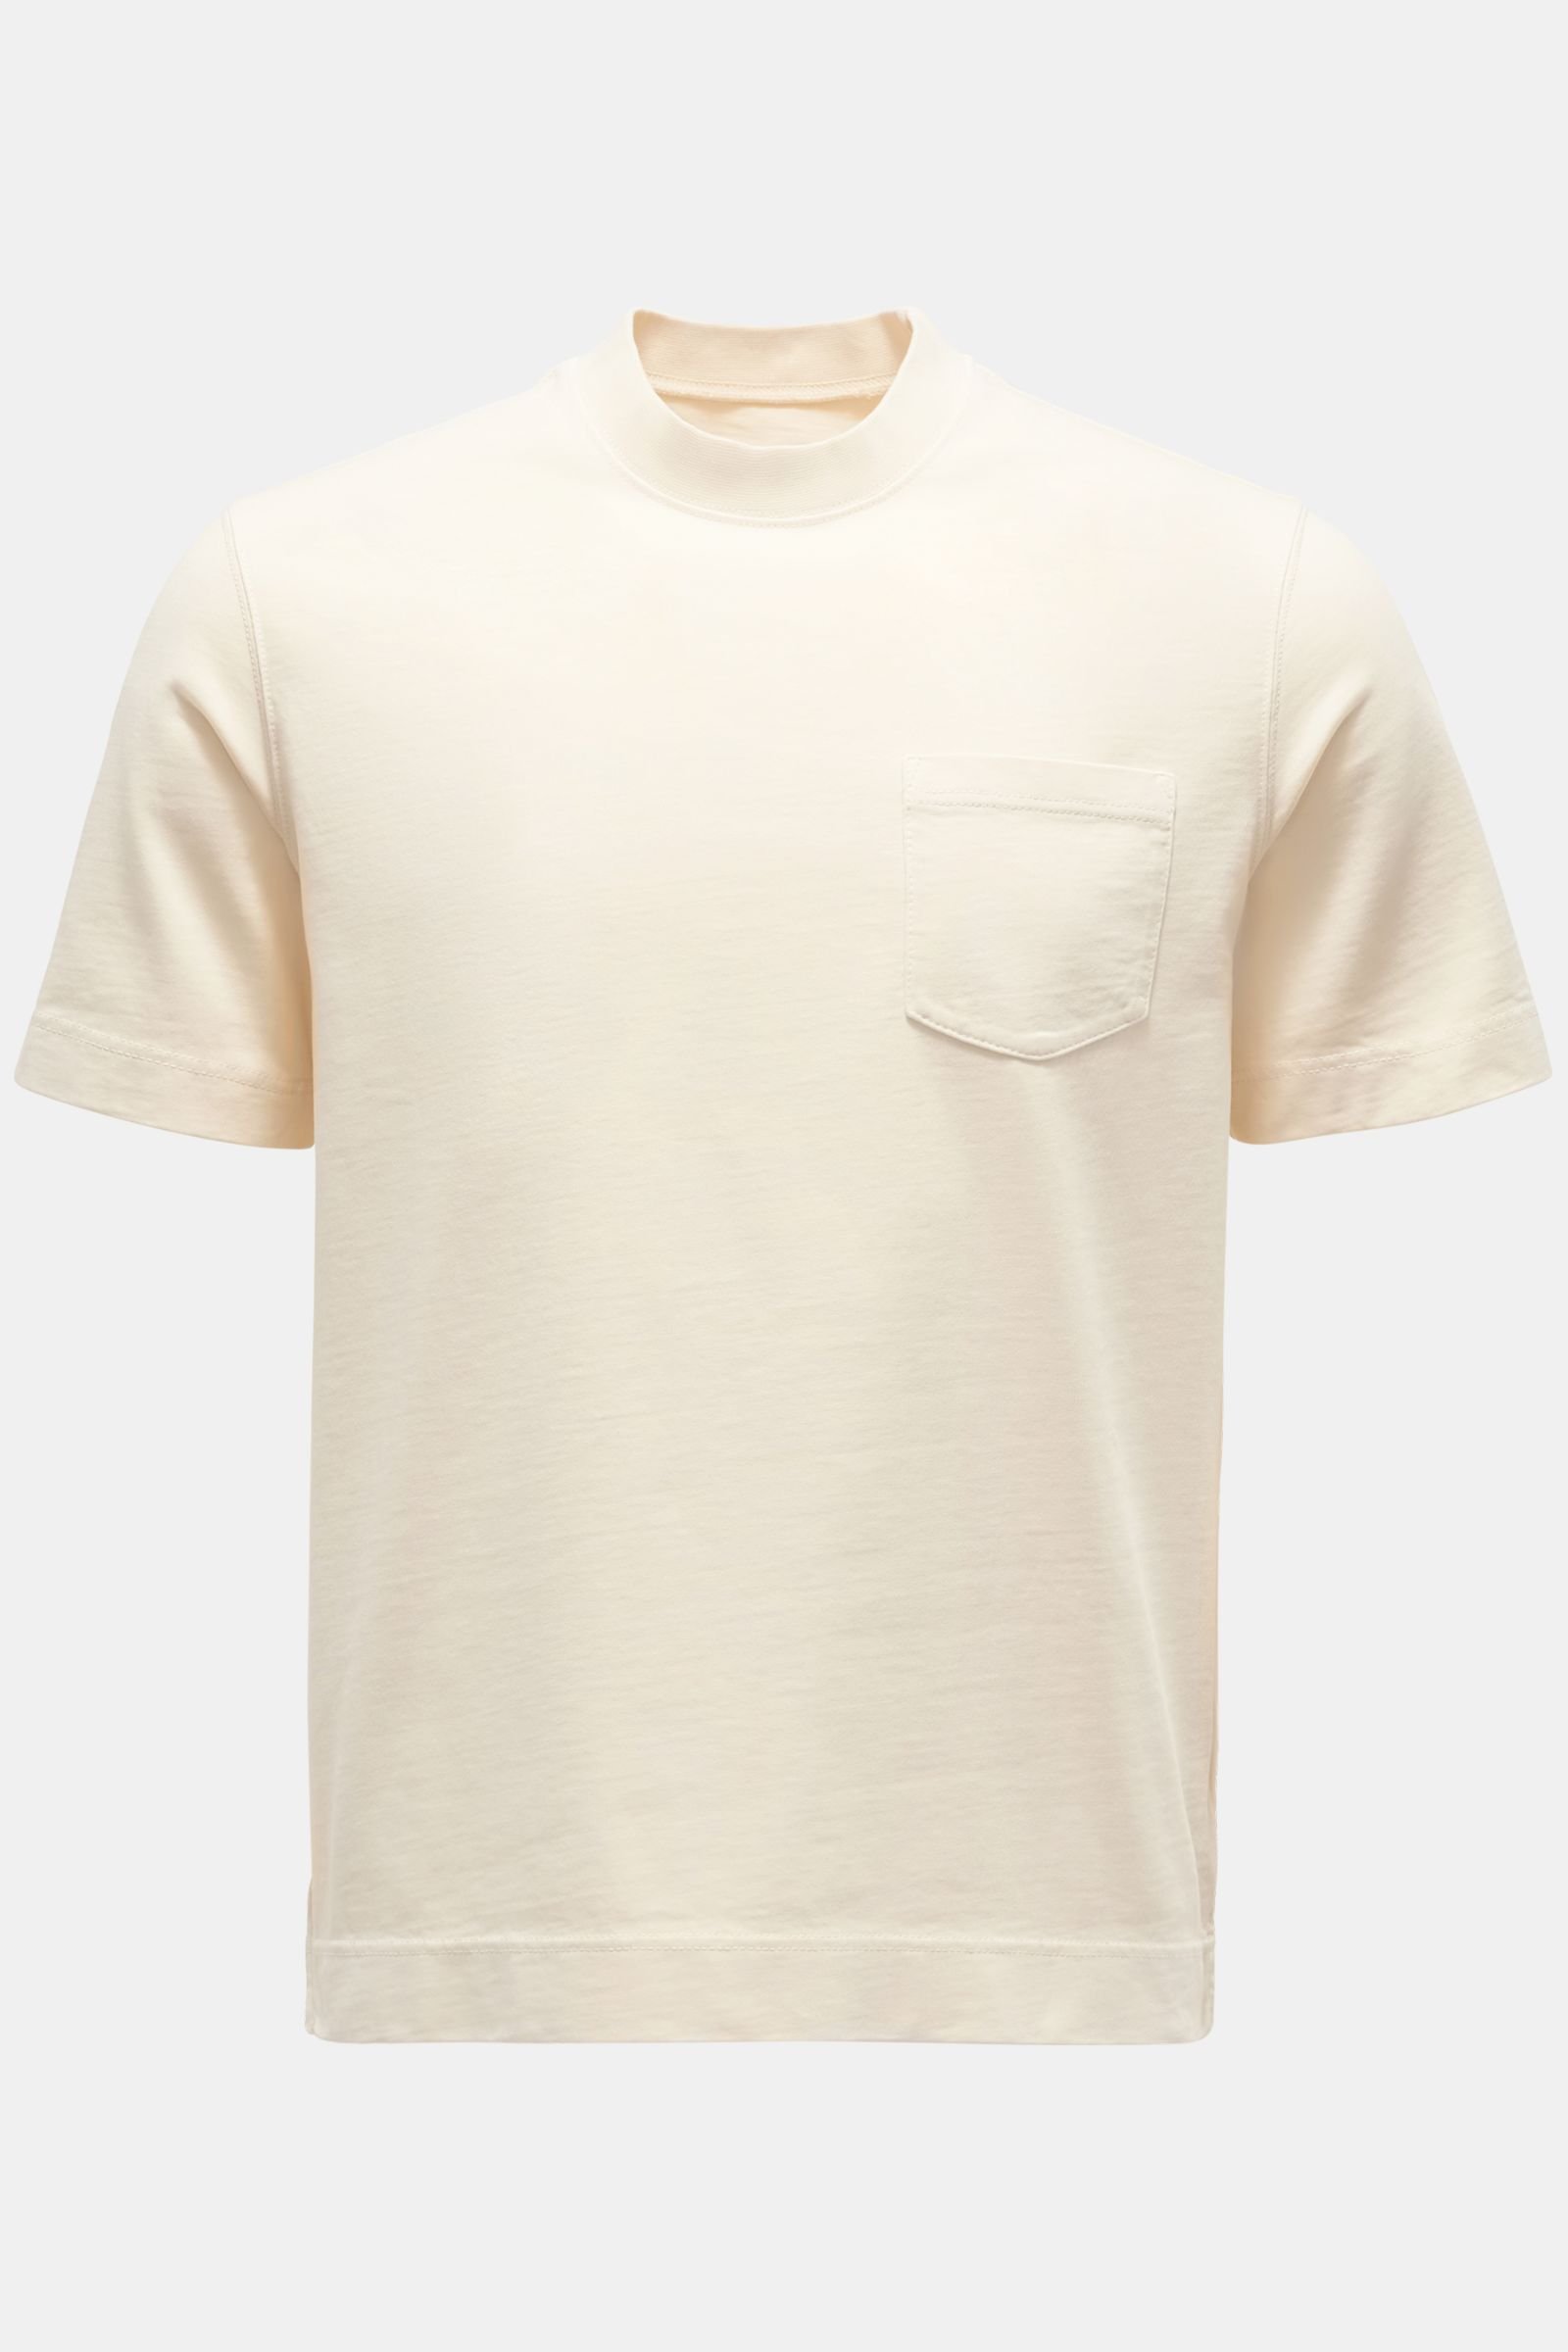 Crew neck T-shirt cream